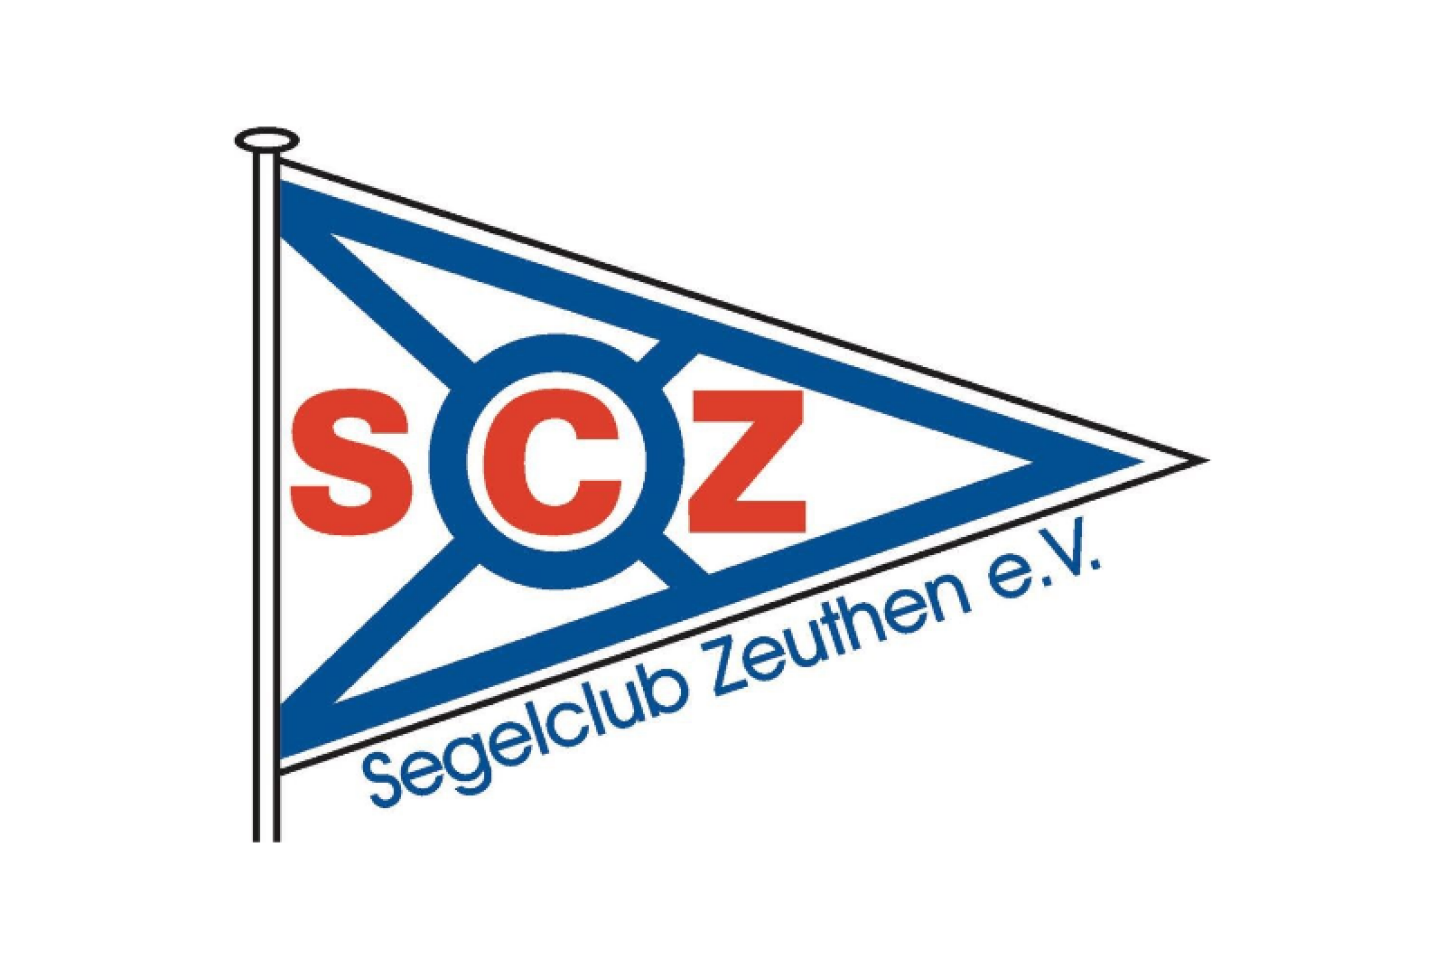 Einrichtung Segelclub Zeuthen Logo.png